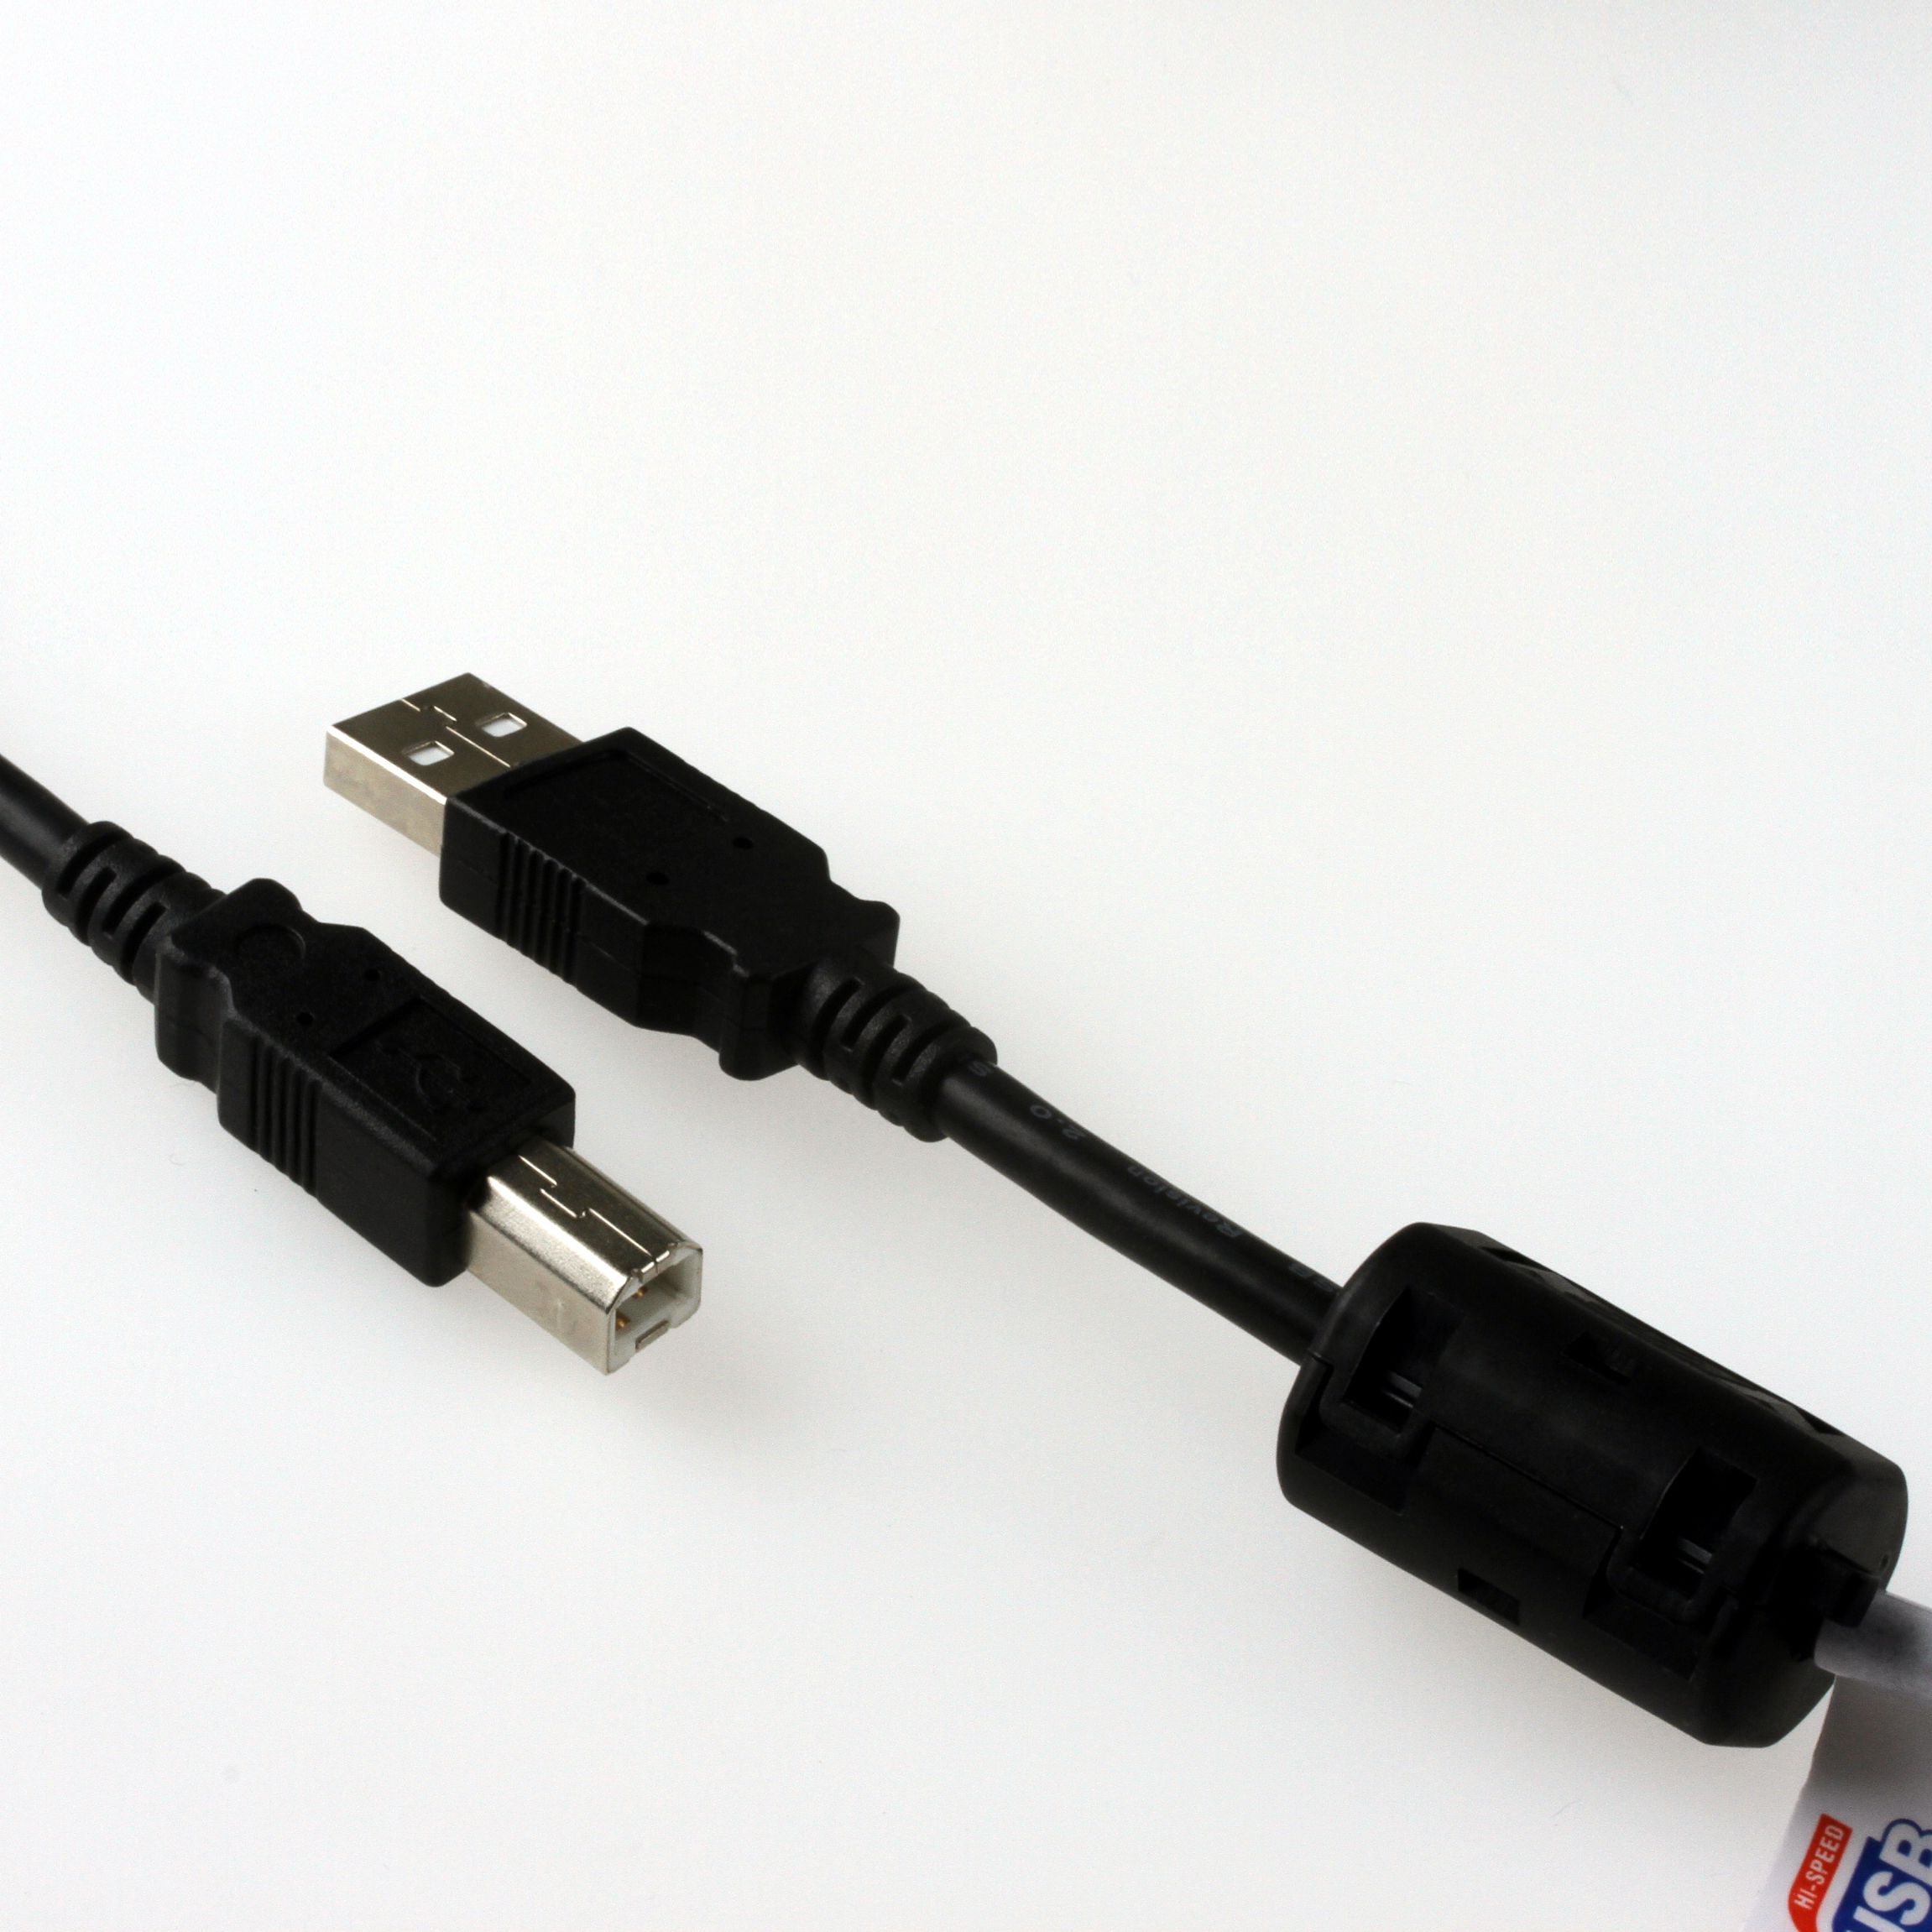 USB 2.0 Industriekabel mit verstärkten Poweradern, PREMIUM+ mit Ferritkern, 5m